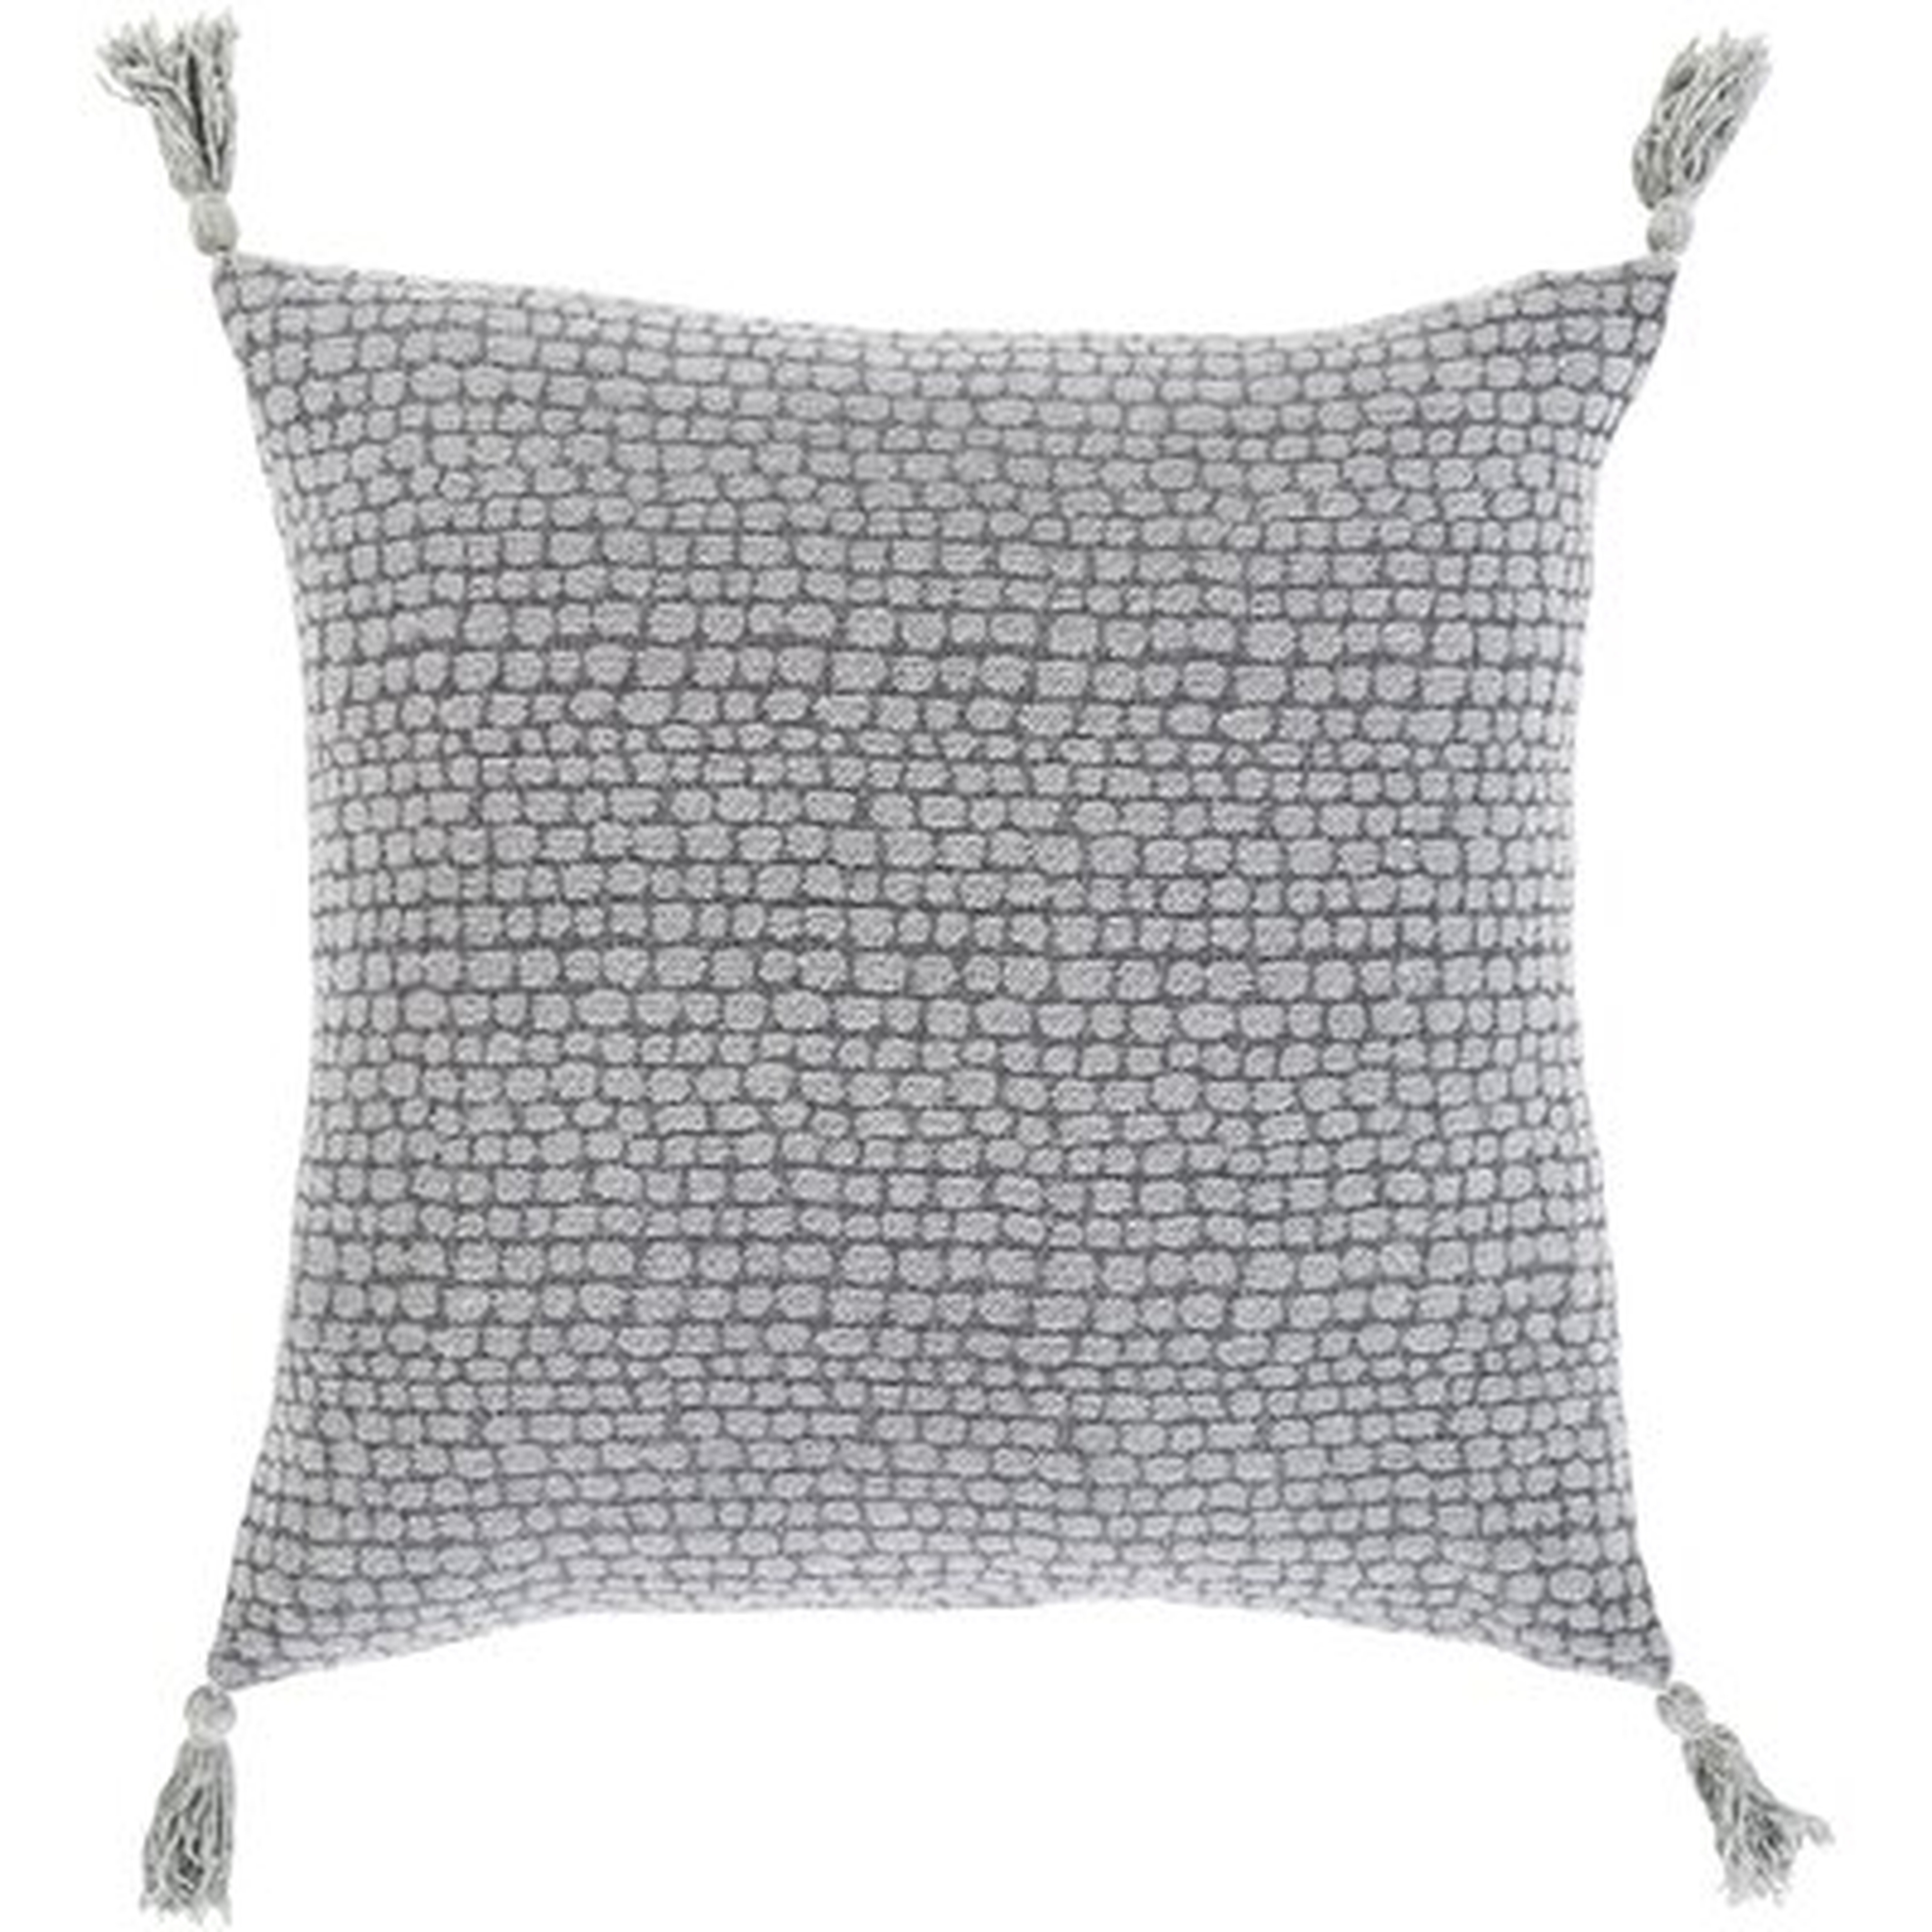 Hartzell Transitional Medium Gray Pillow Cover - Wayfair